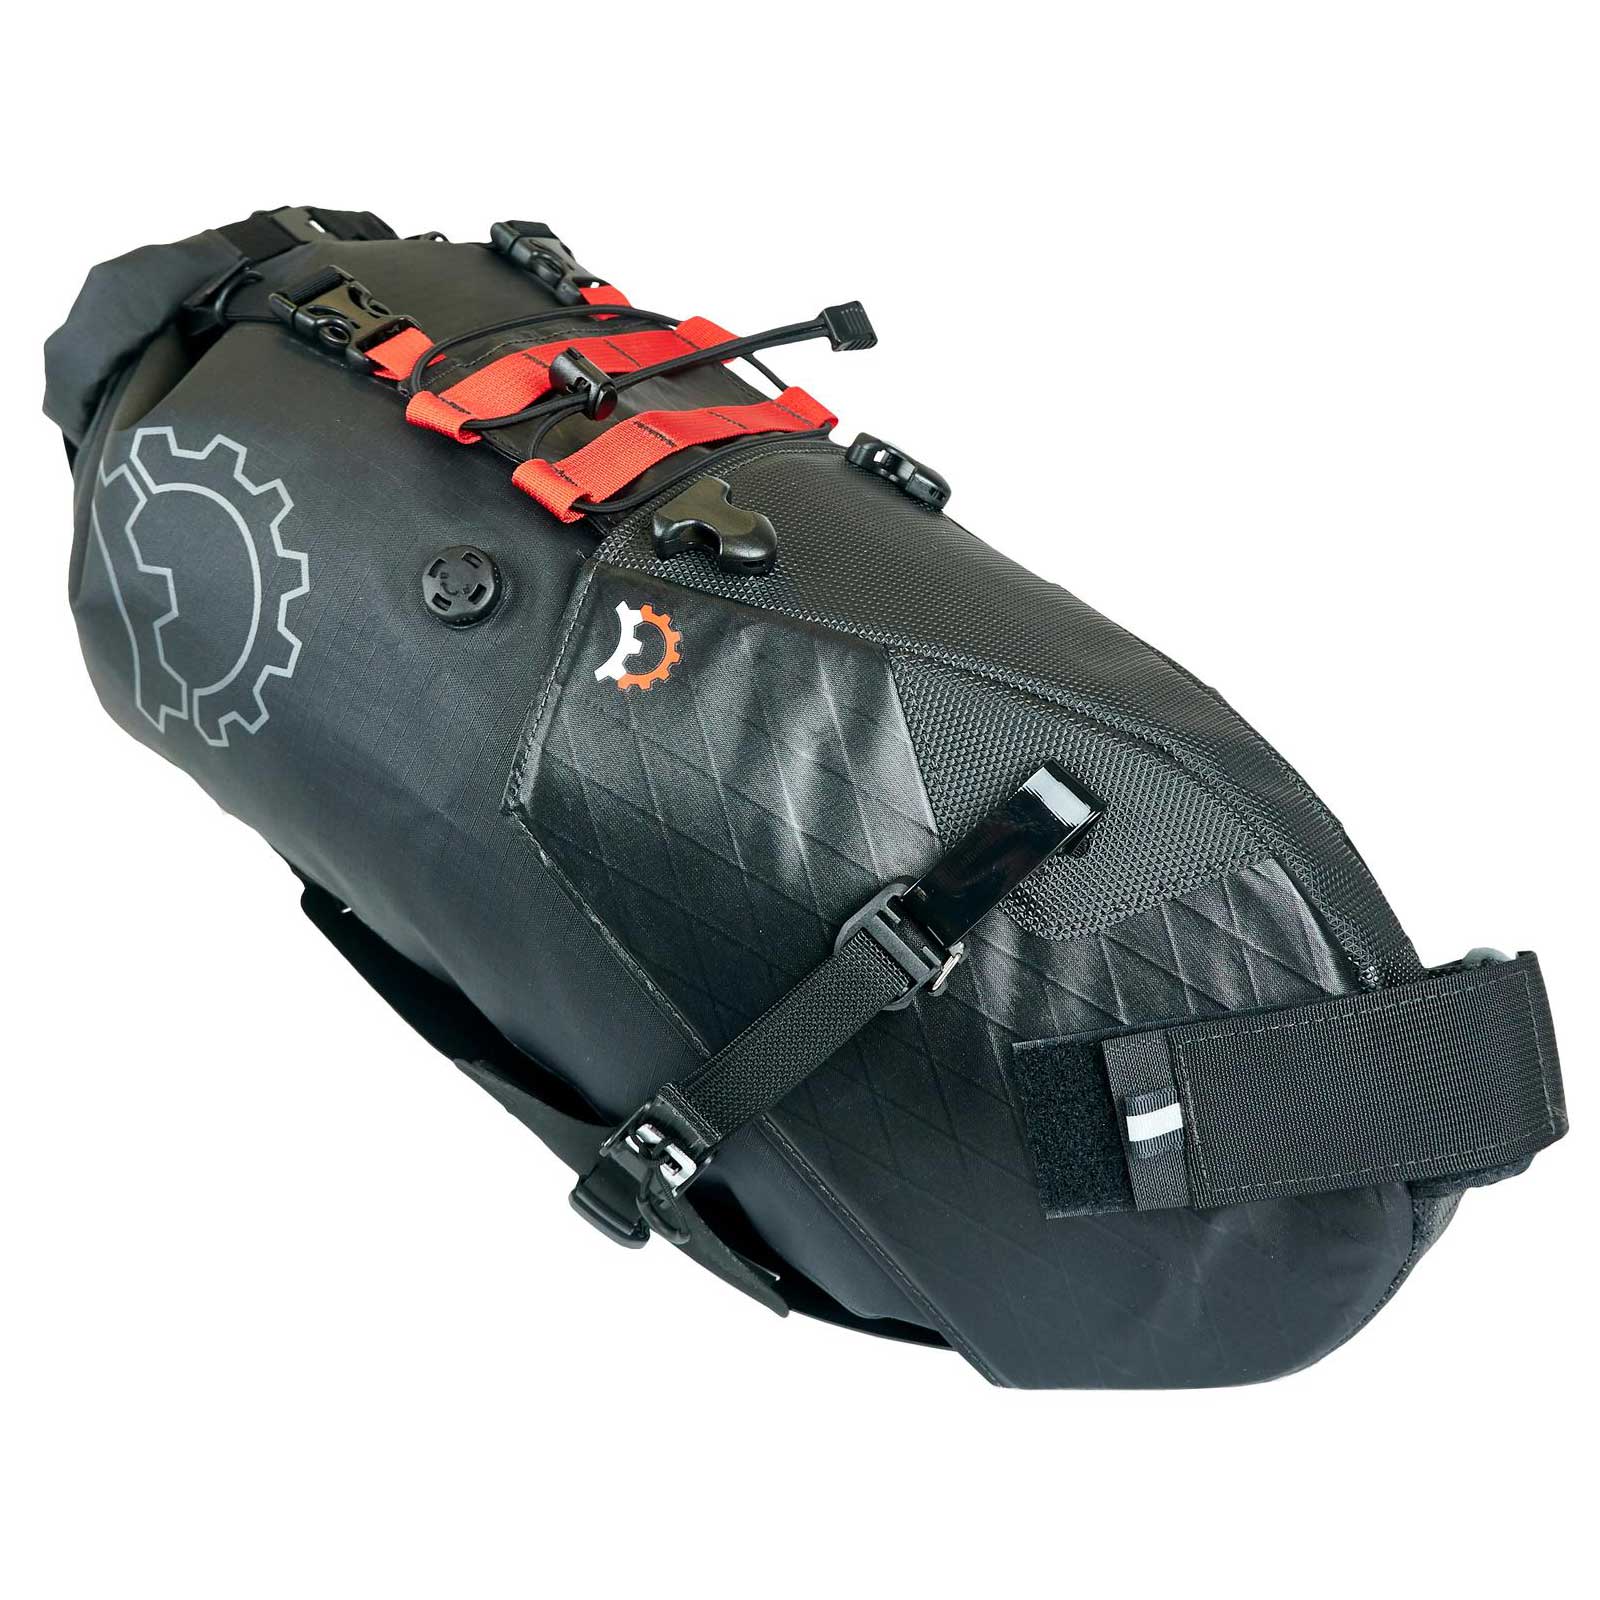 Productfoto van Revelate Designs Terrapin System 14L Seat Bag - black